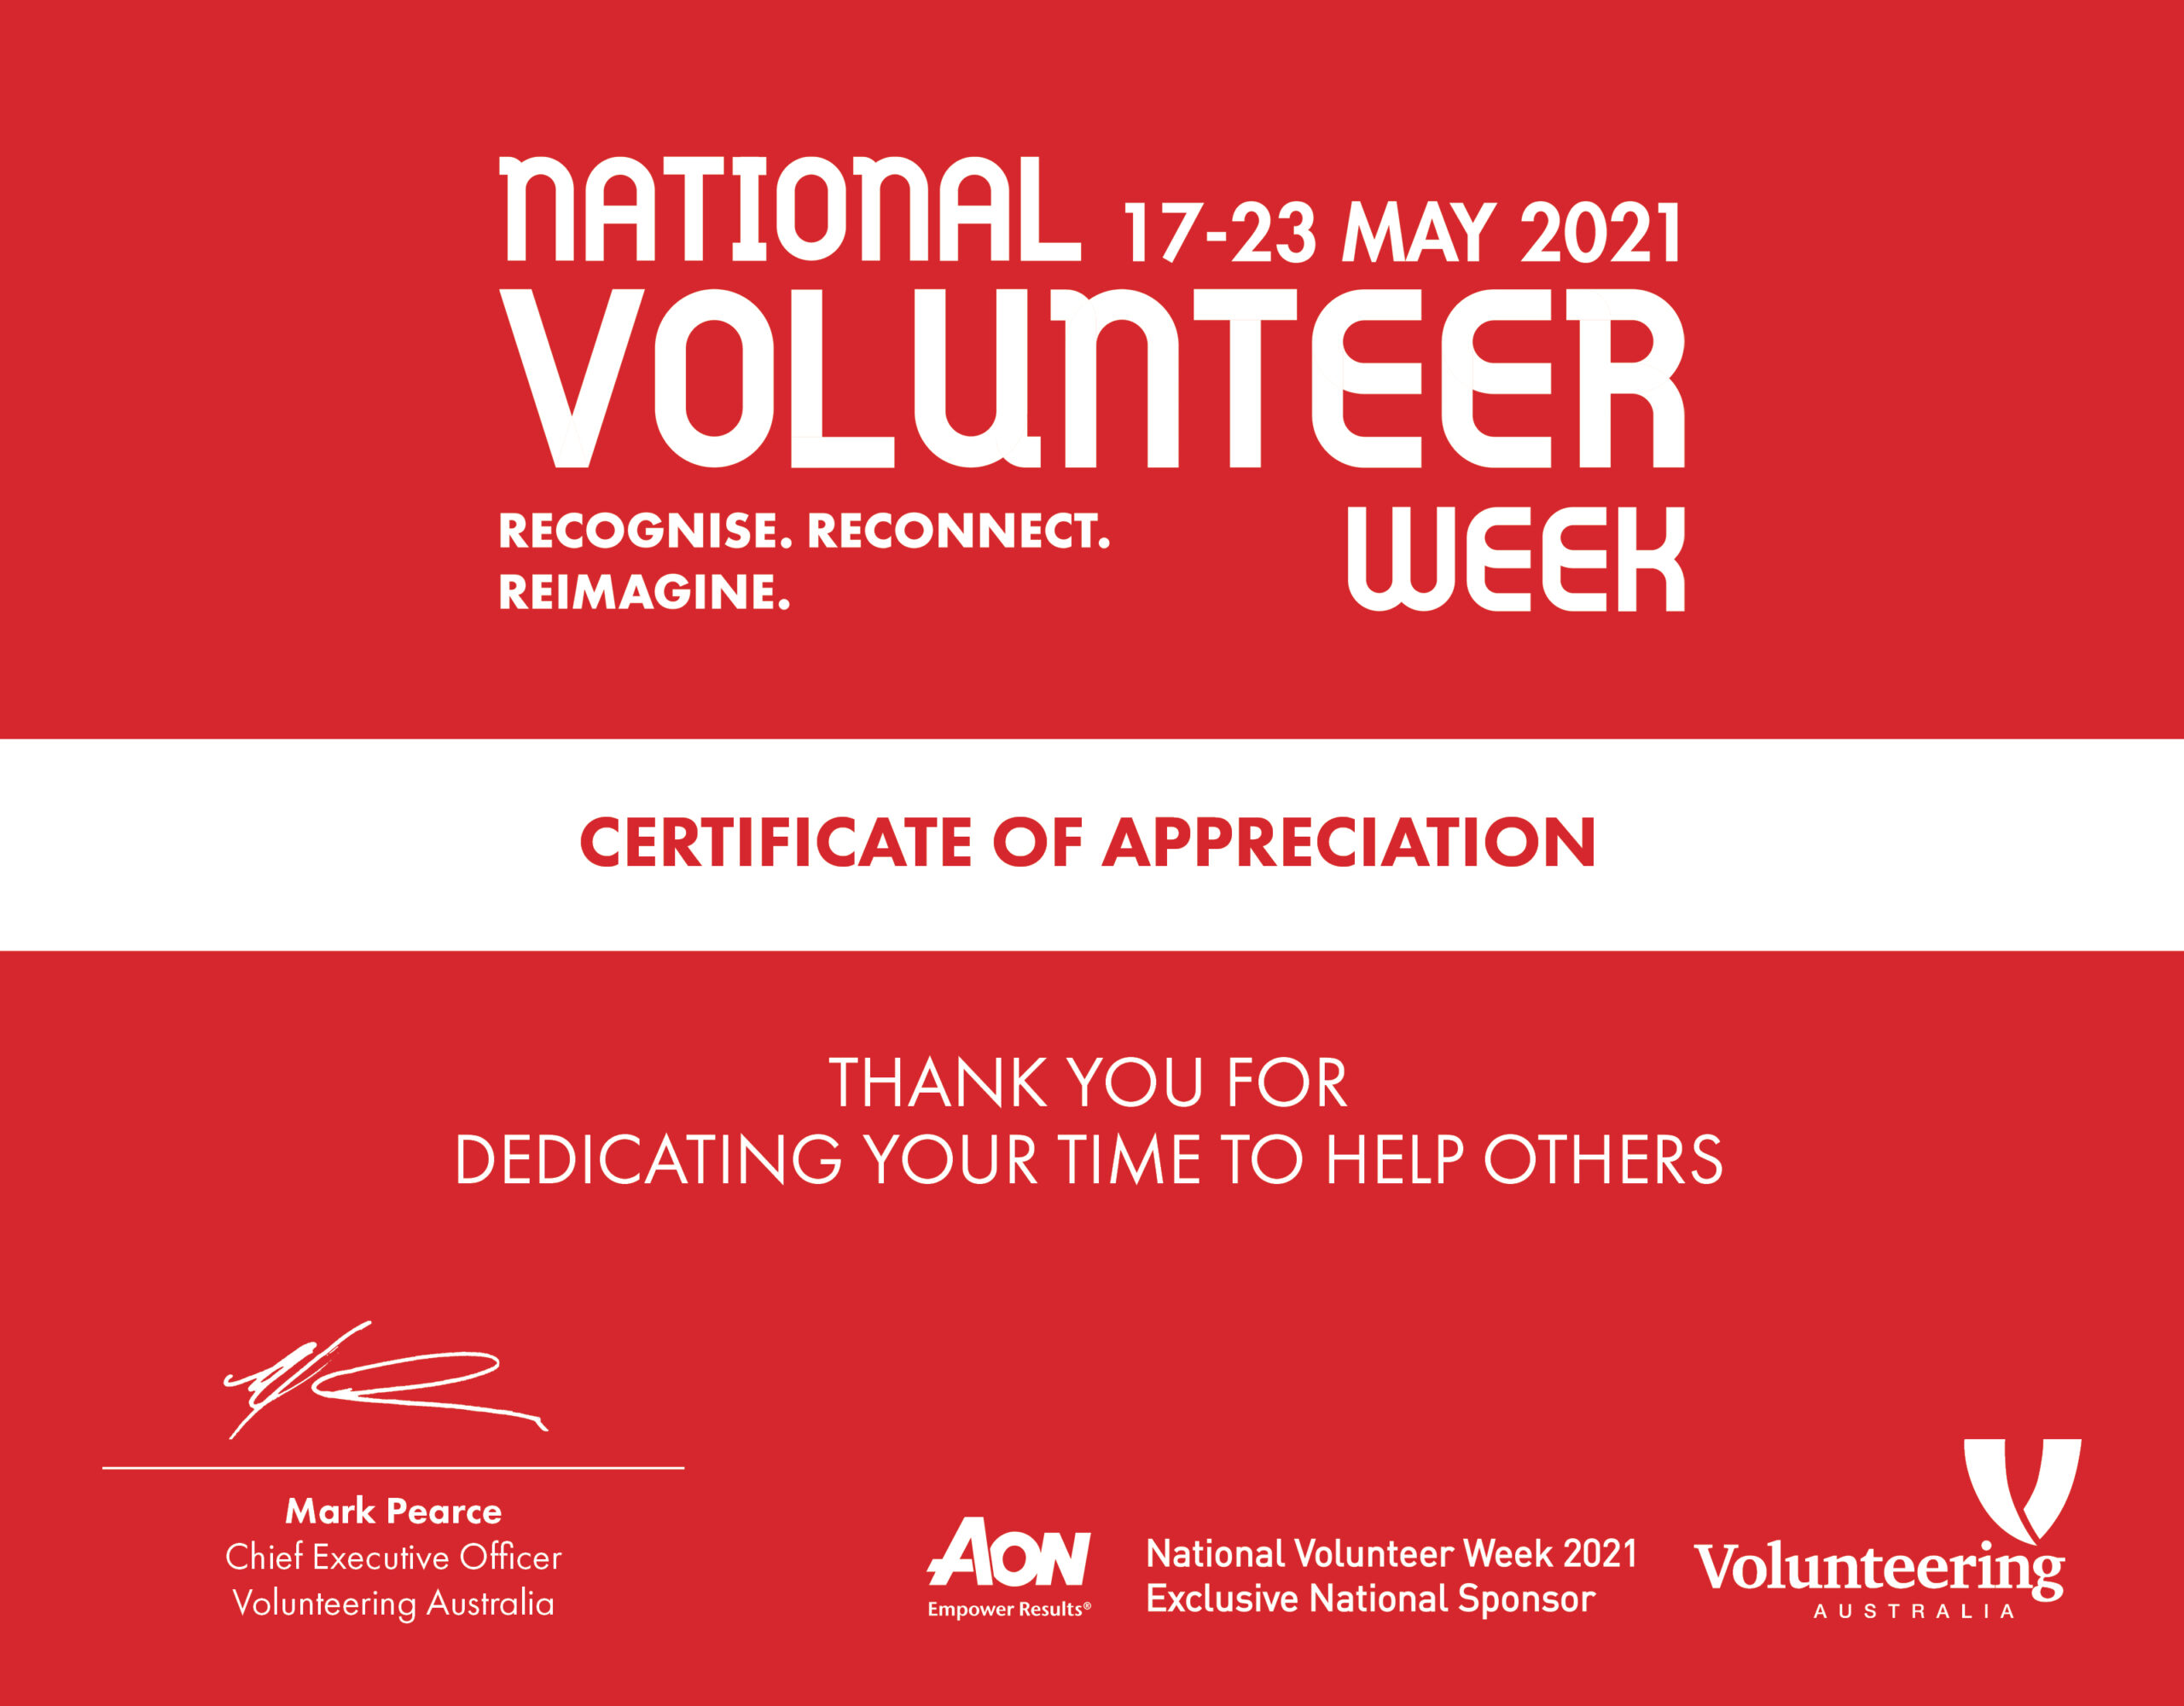 online-certificate-of-appreciation-nvw2021-volunteering-australia